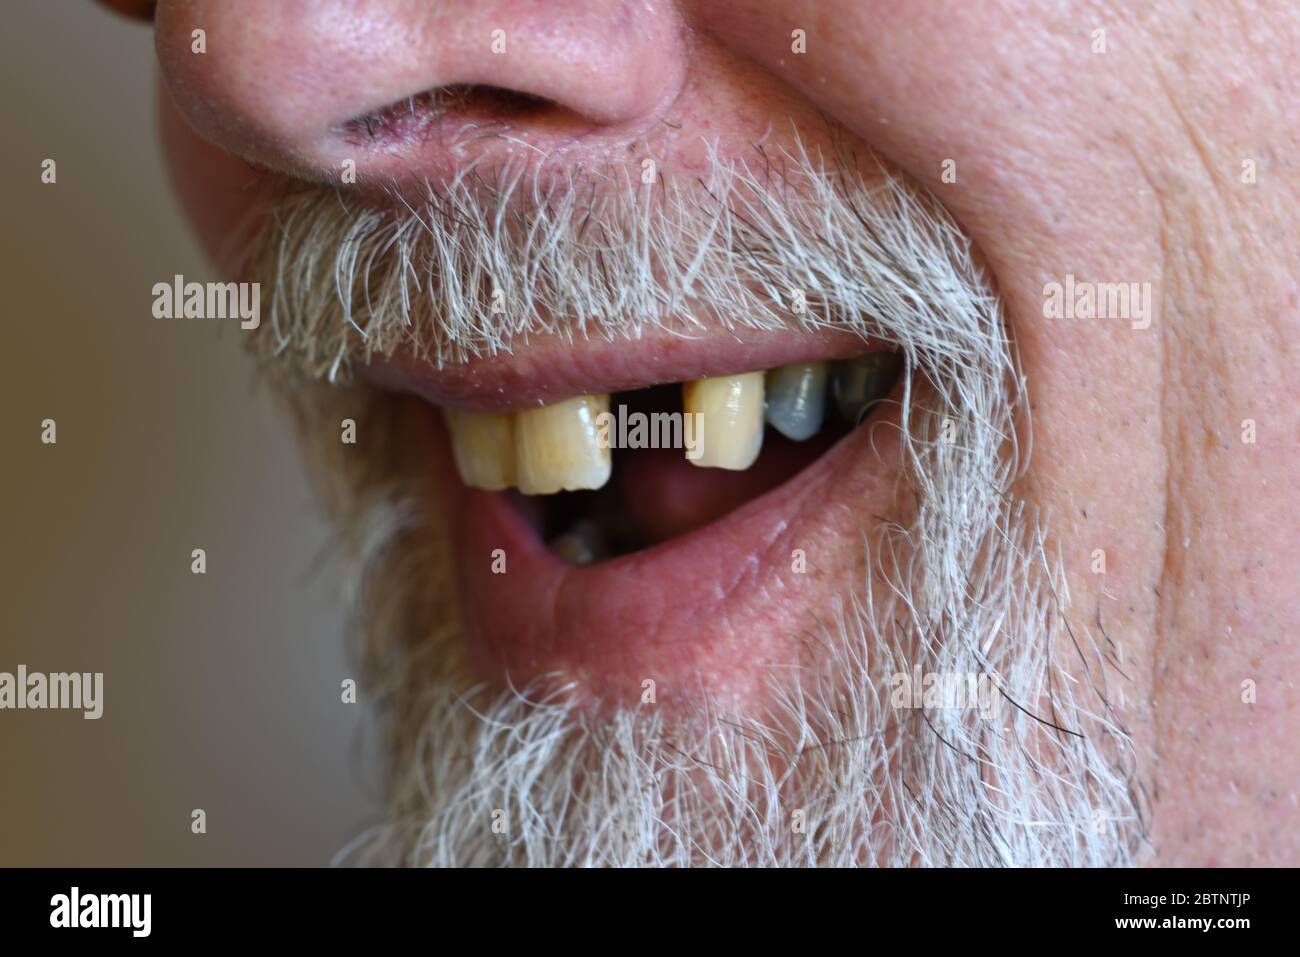 Vieux homme avec une dent manquante ou une dent d'Incisor latérale mandibulaire manquante Banque D'Images